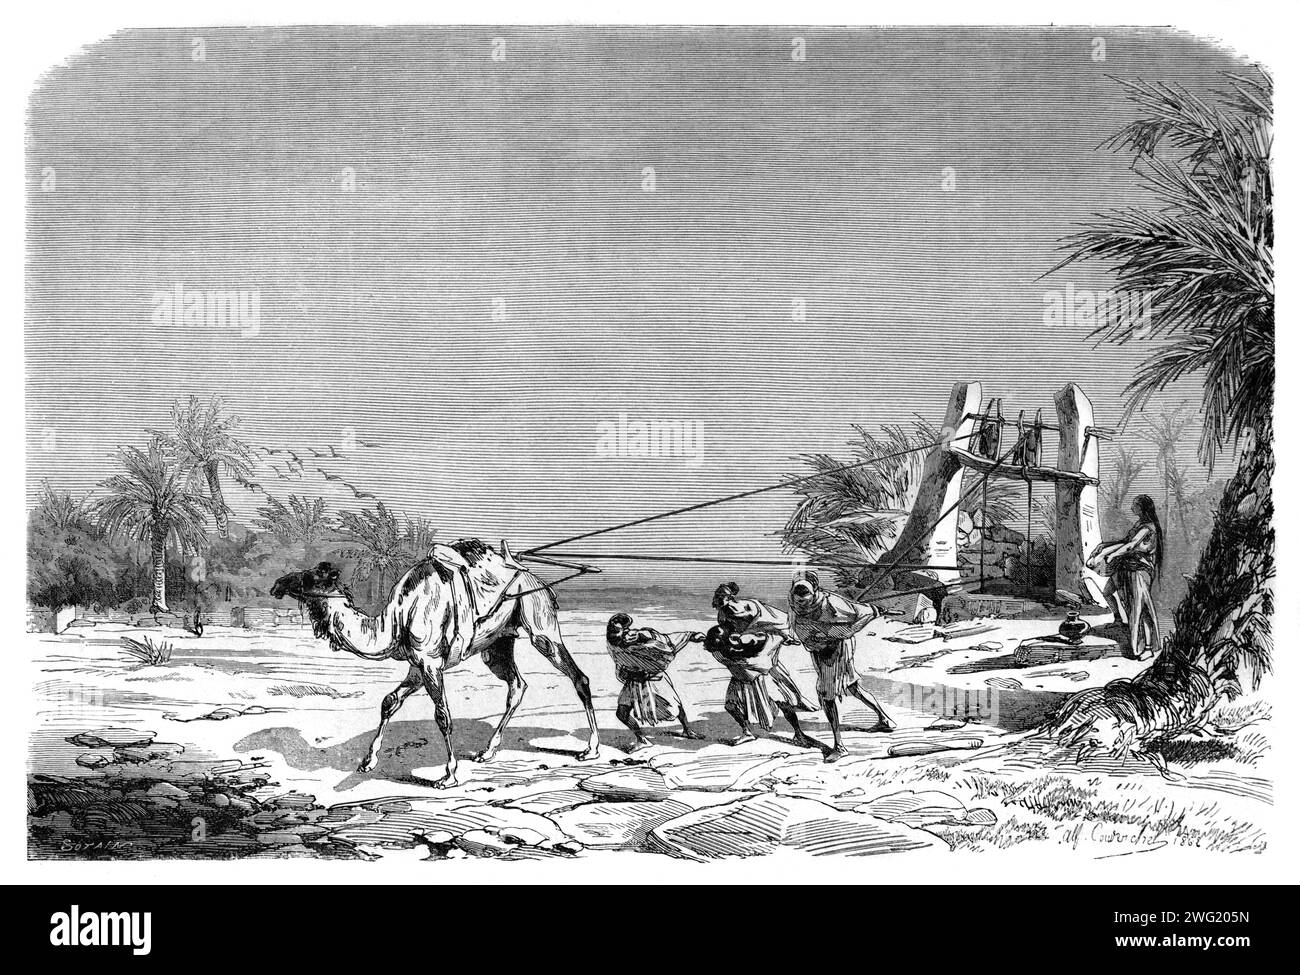 Kamel-Wasserbrunnen, oder Kamel, das Wasser aus einem Brunnen zieht, in Metlili Algerien. Vintage oder historische Gravur oder Illustration 1863 Stockfoto